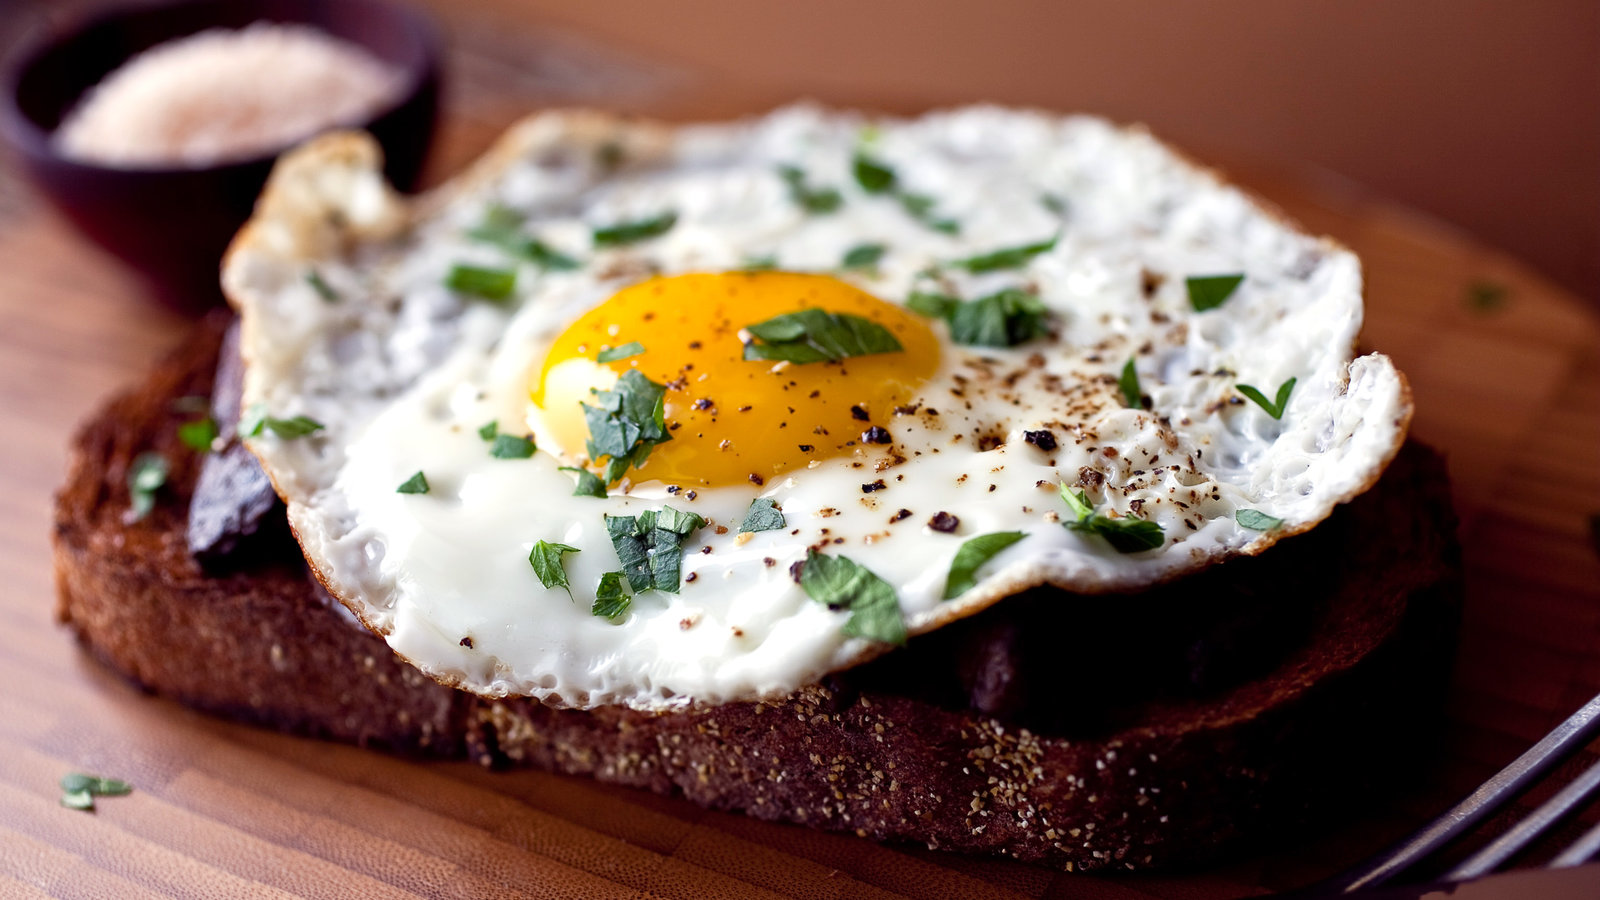 Ăn trứng vào buổi sáng rất bổ dưỡng nhưng tránh 3 điều kiêng kỵ này, nếu không sẽ tạo sỏi dạ dày, tích tụ độc tố trong cơ thể - Ảnh 3